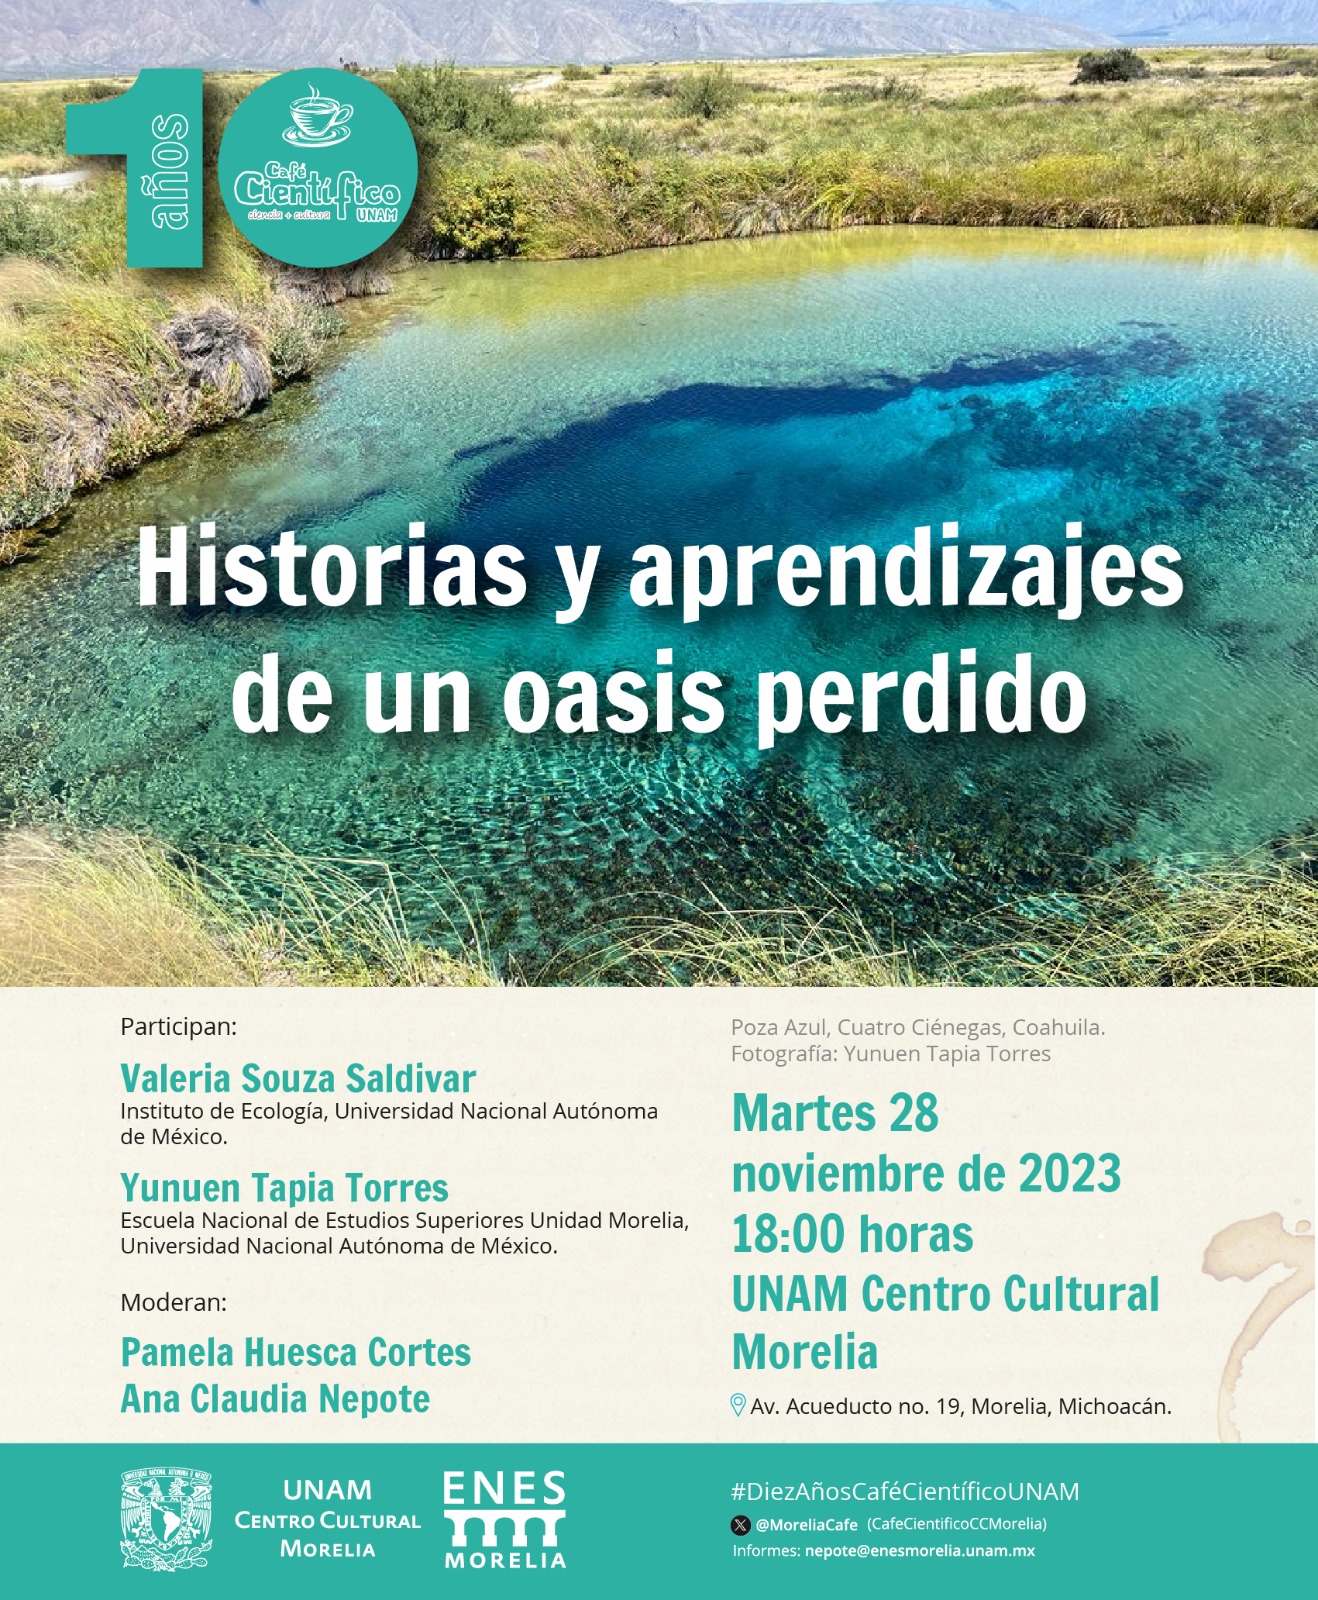 Celebra 10 años Café científico de UNAM Centro Cultural Morelia